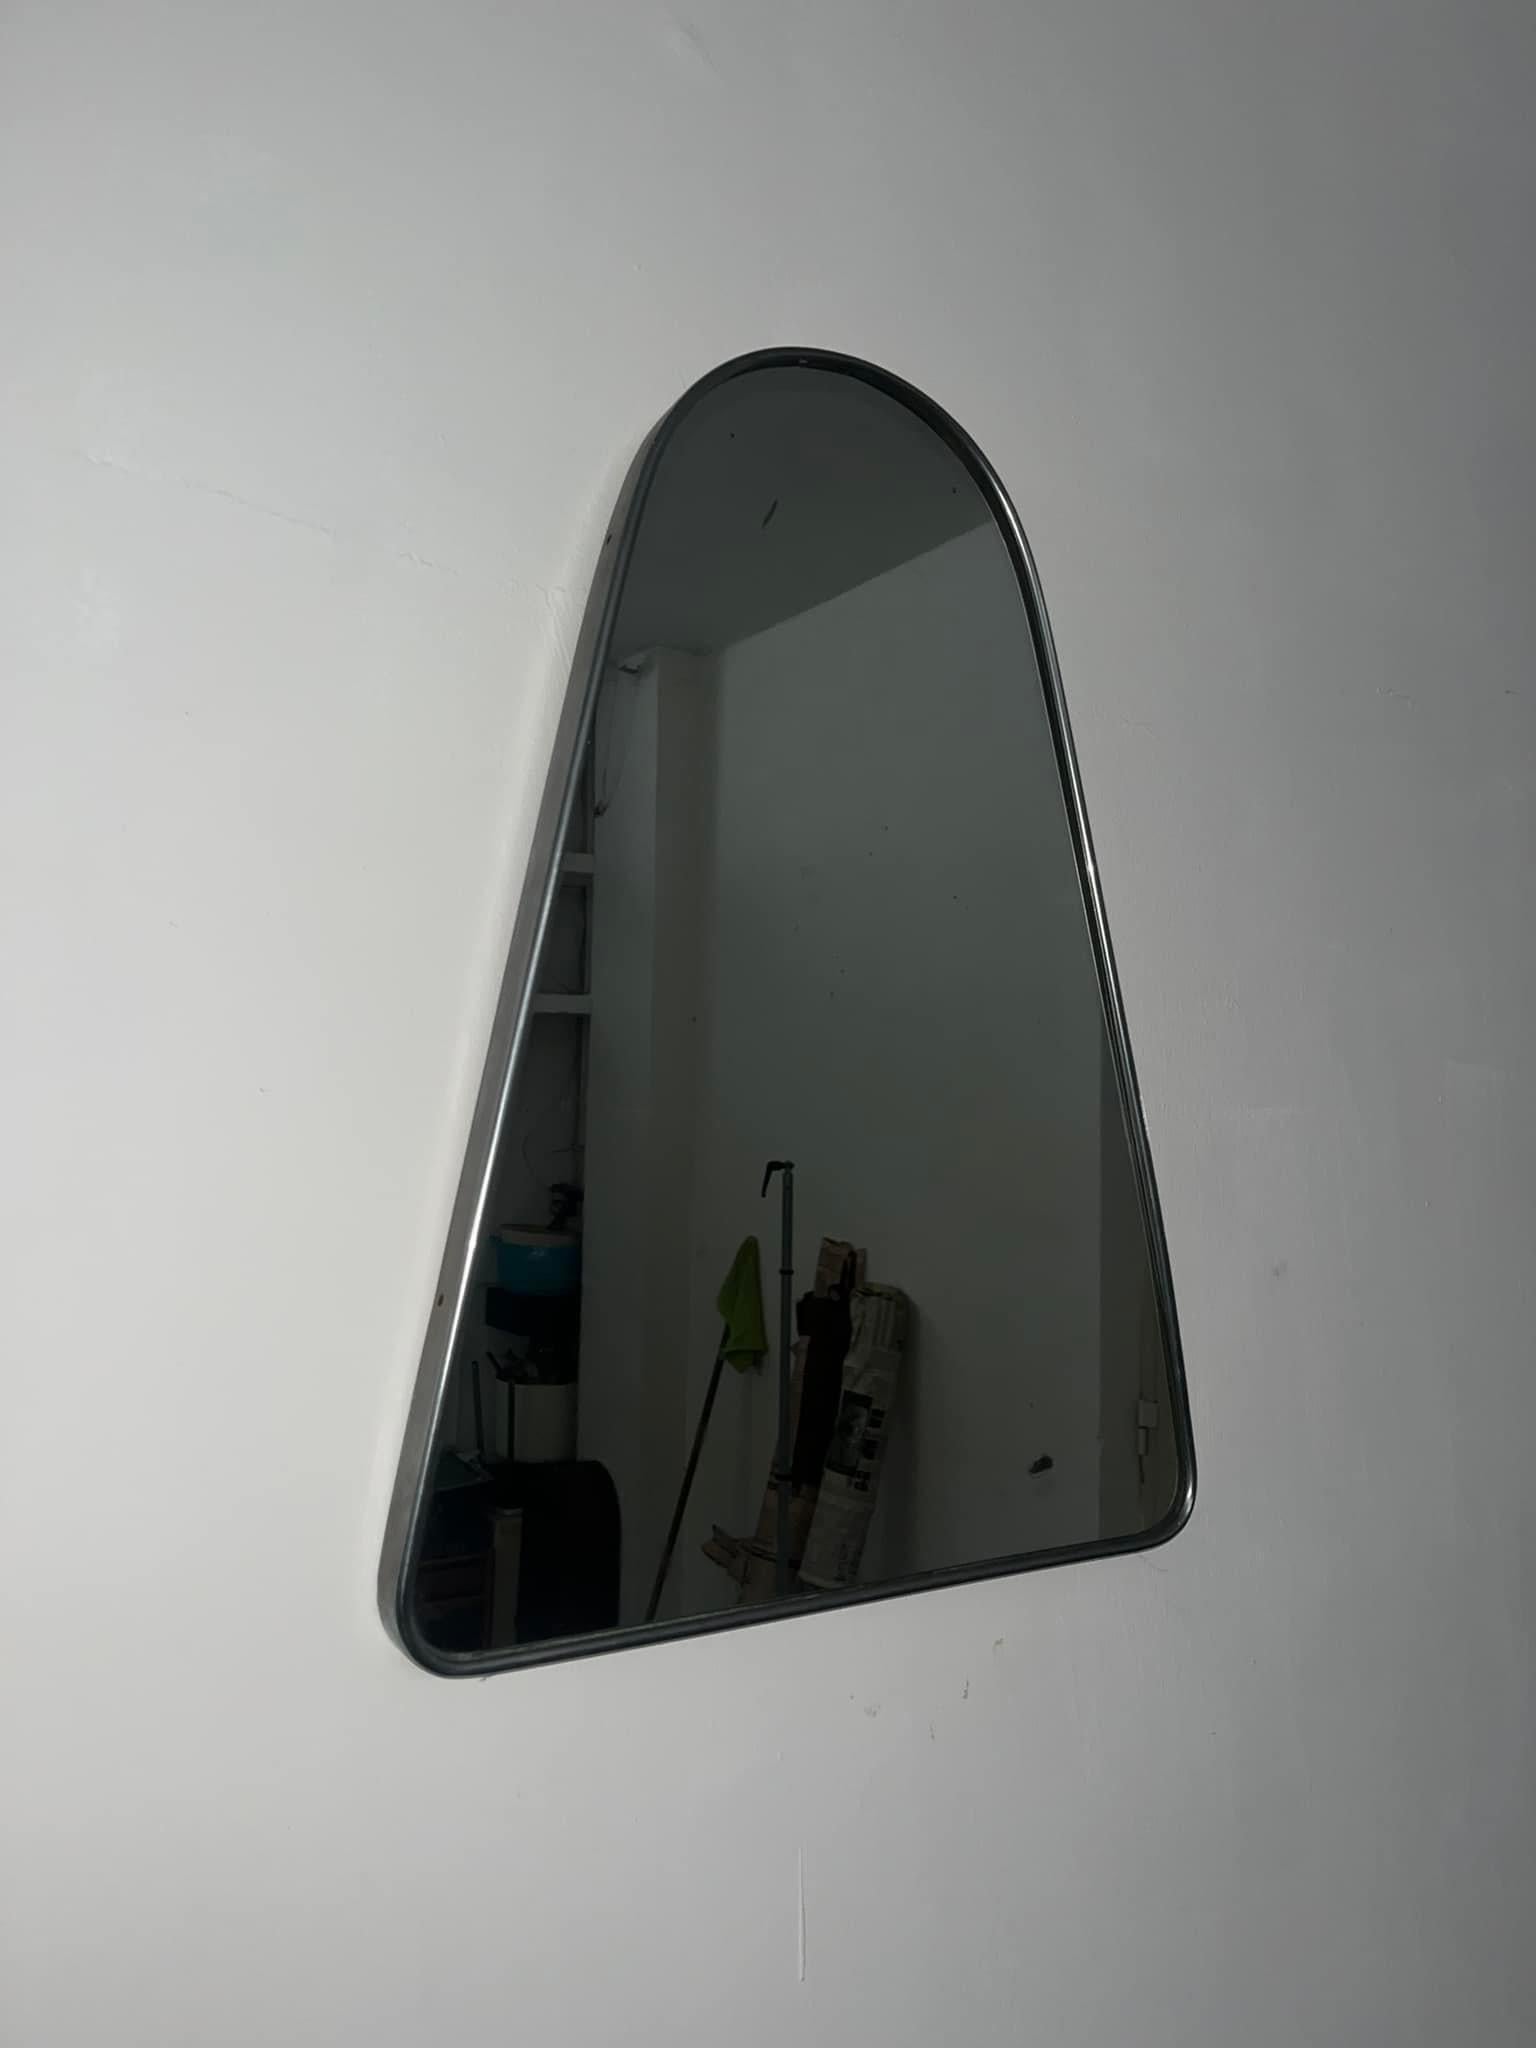 miroir en acier et verre 60 cm de haut 60 cm de large 44 cm de profondeur 3 cm 